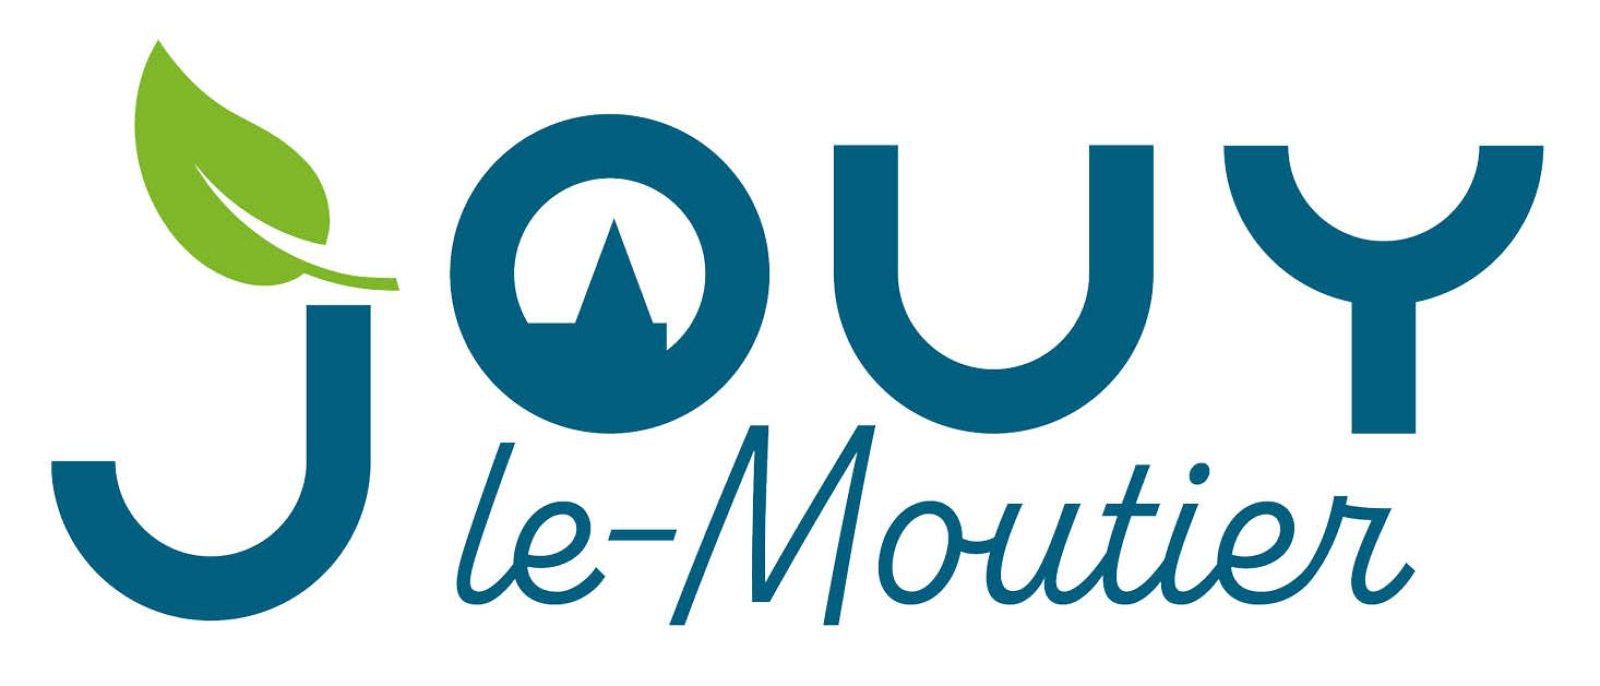 Logo ville de Jouy-le-Moutier